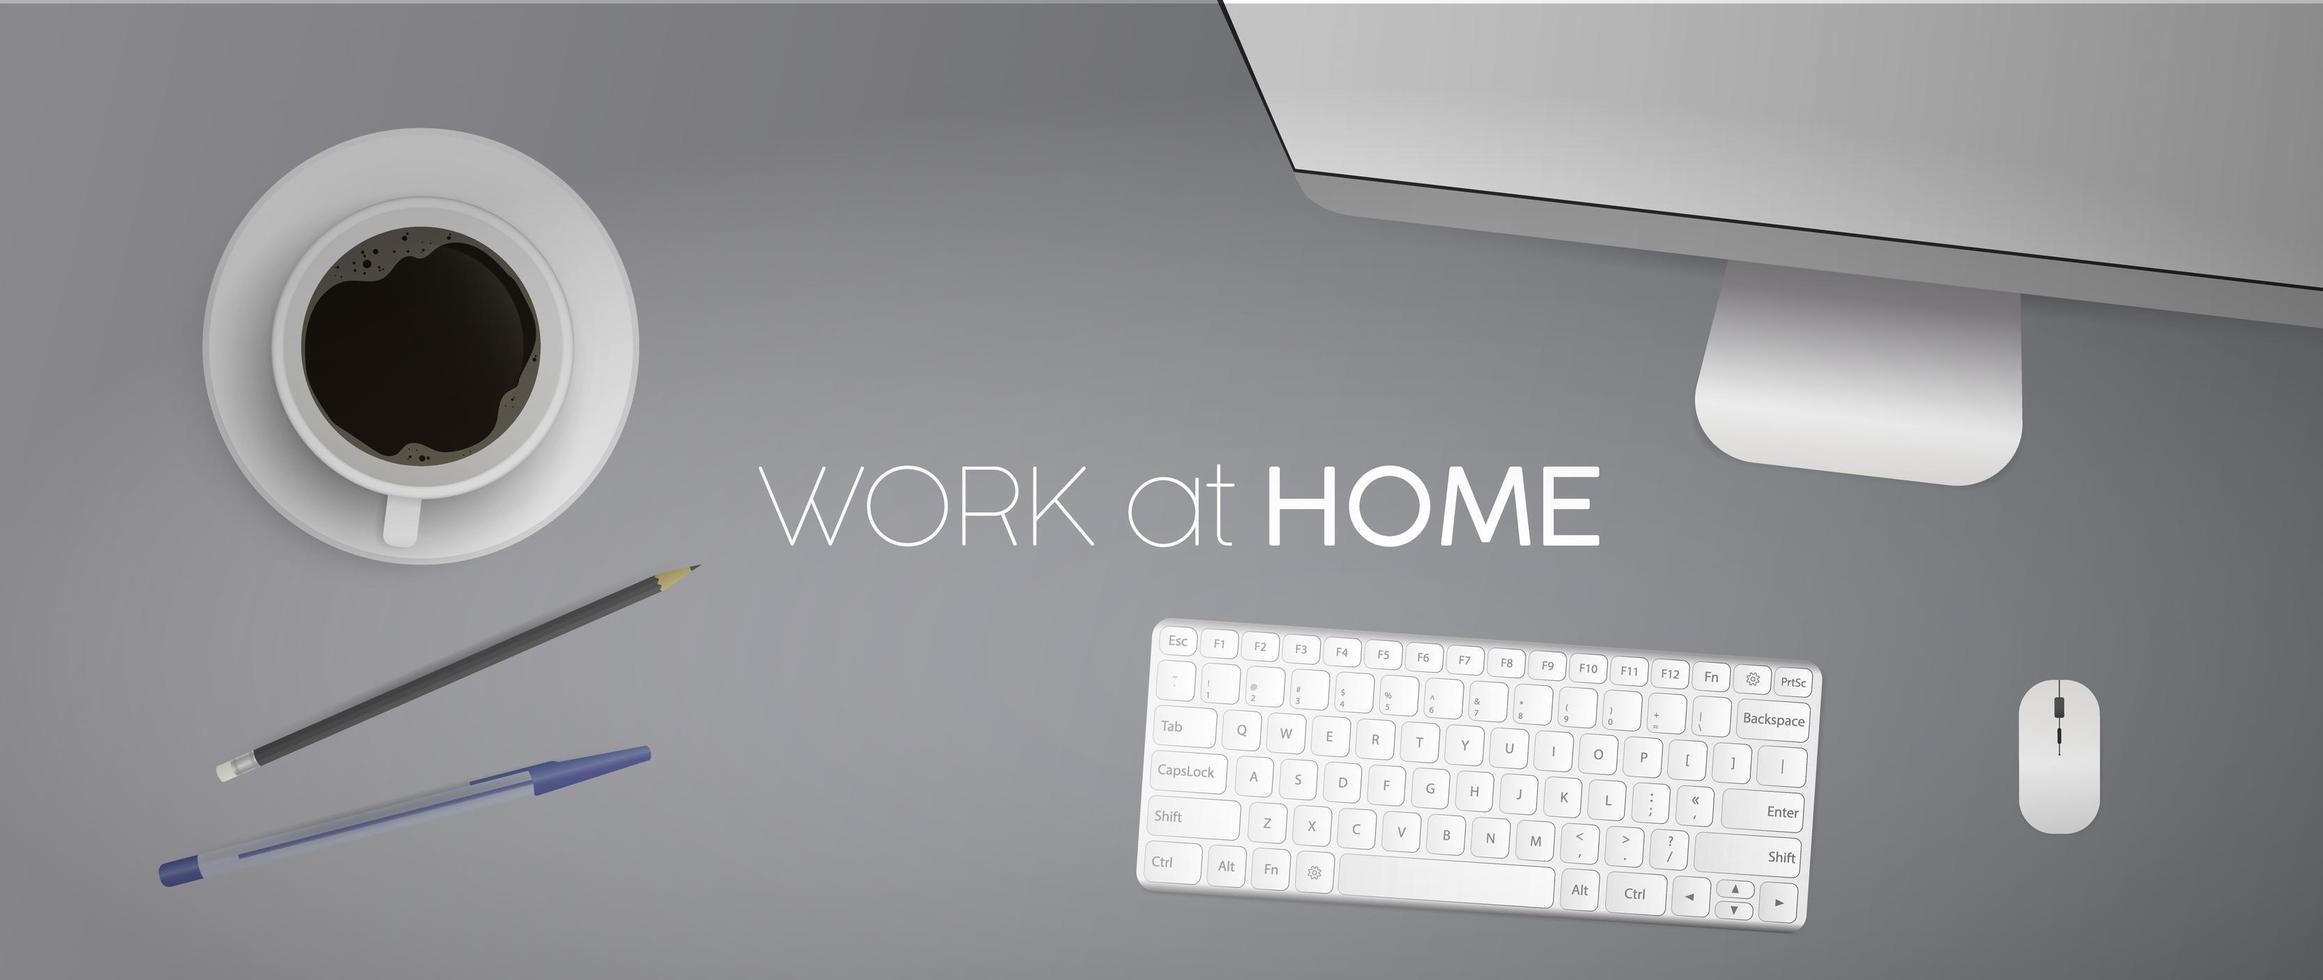 Arbeit zu Hause-Banner. flache Lage, Draufsicht Schreibtisch mit Computer. Kaffee, Bleistift, Stift, Tastatur, Computermaus, Monitor. realistische Vektorillustration. vektor